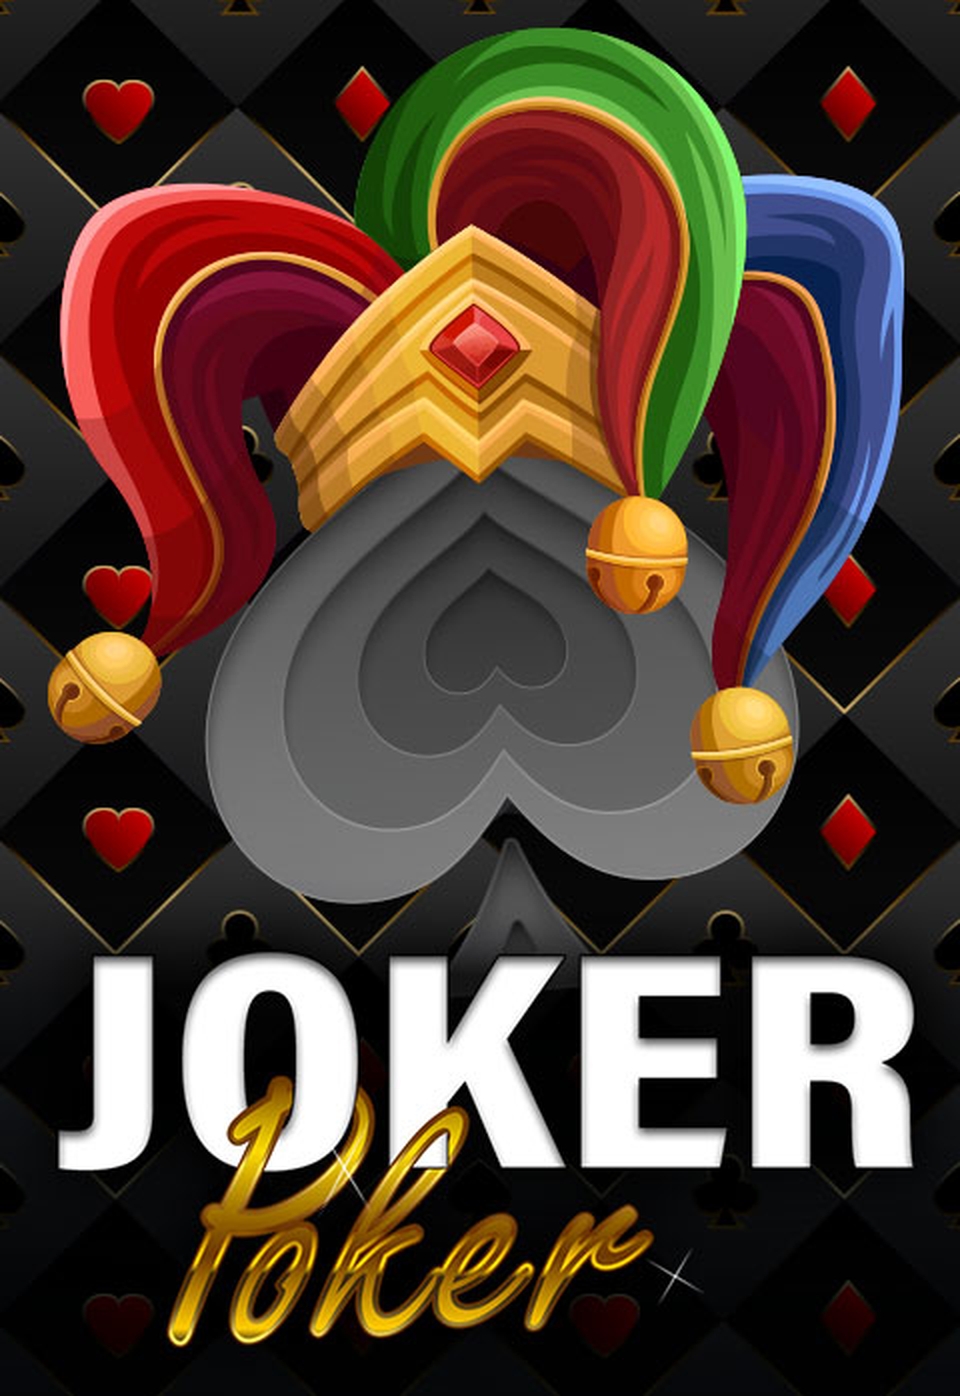 Joker Poker demo